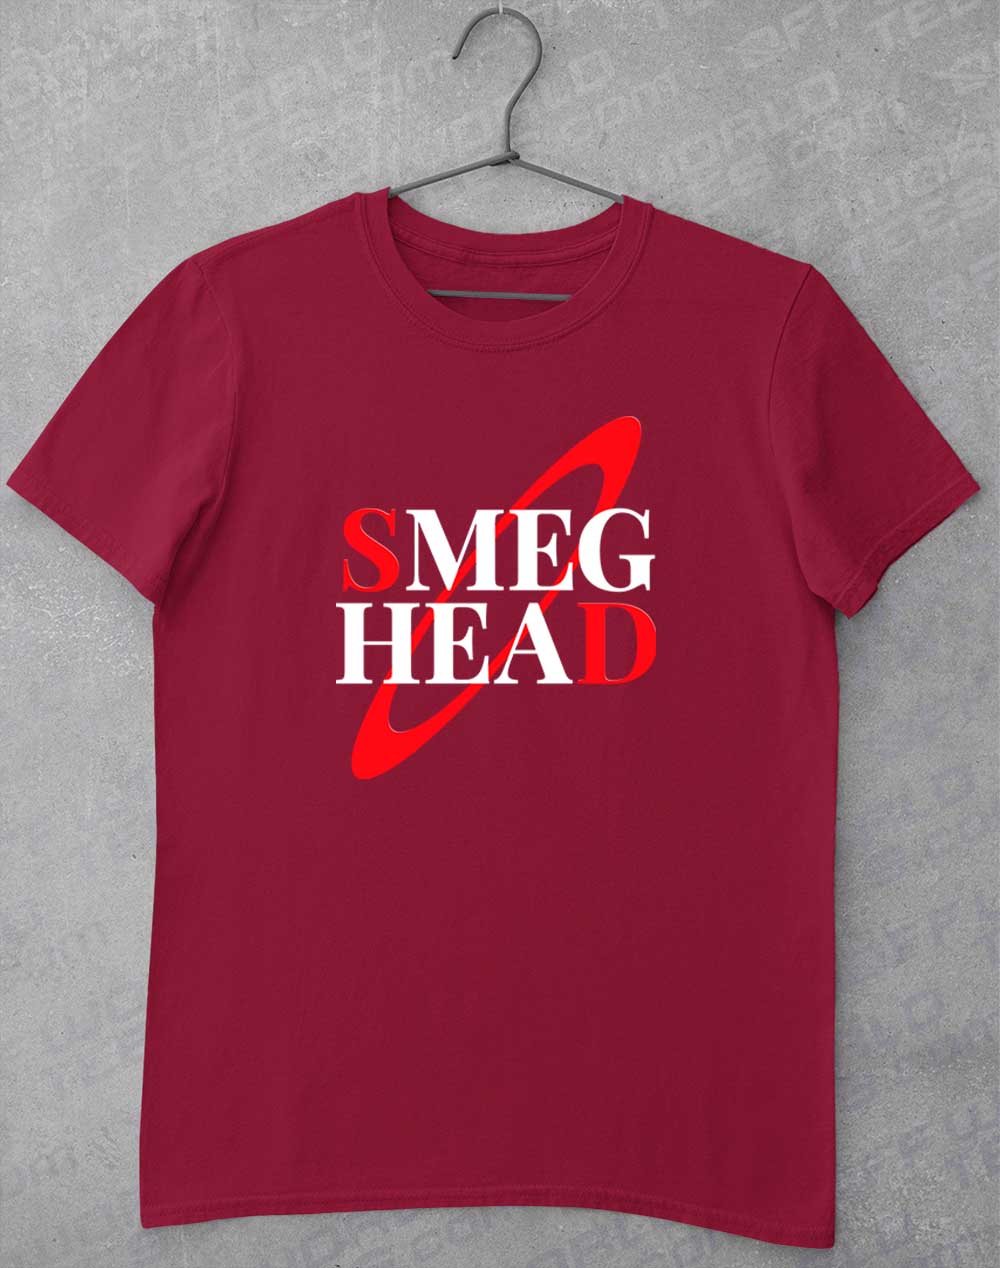 Cardinal Red - Smeg Head T-Shirt